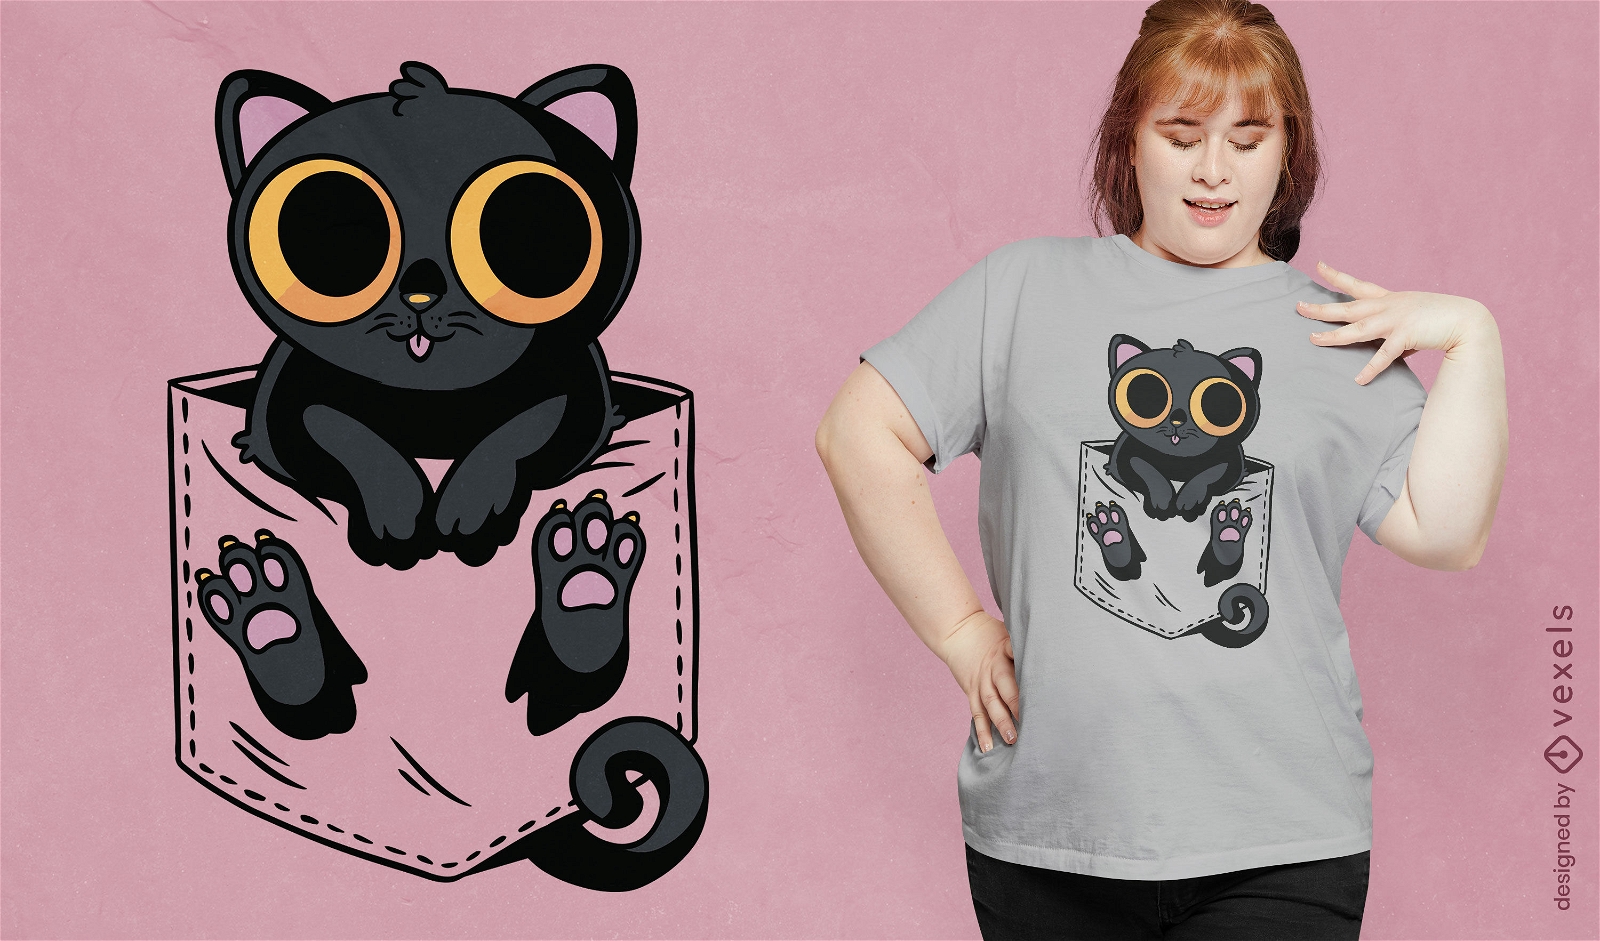 Black cat in a pocket t-shirt design